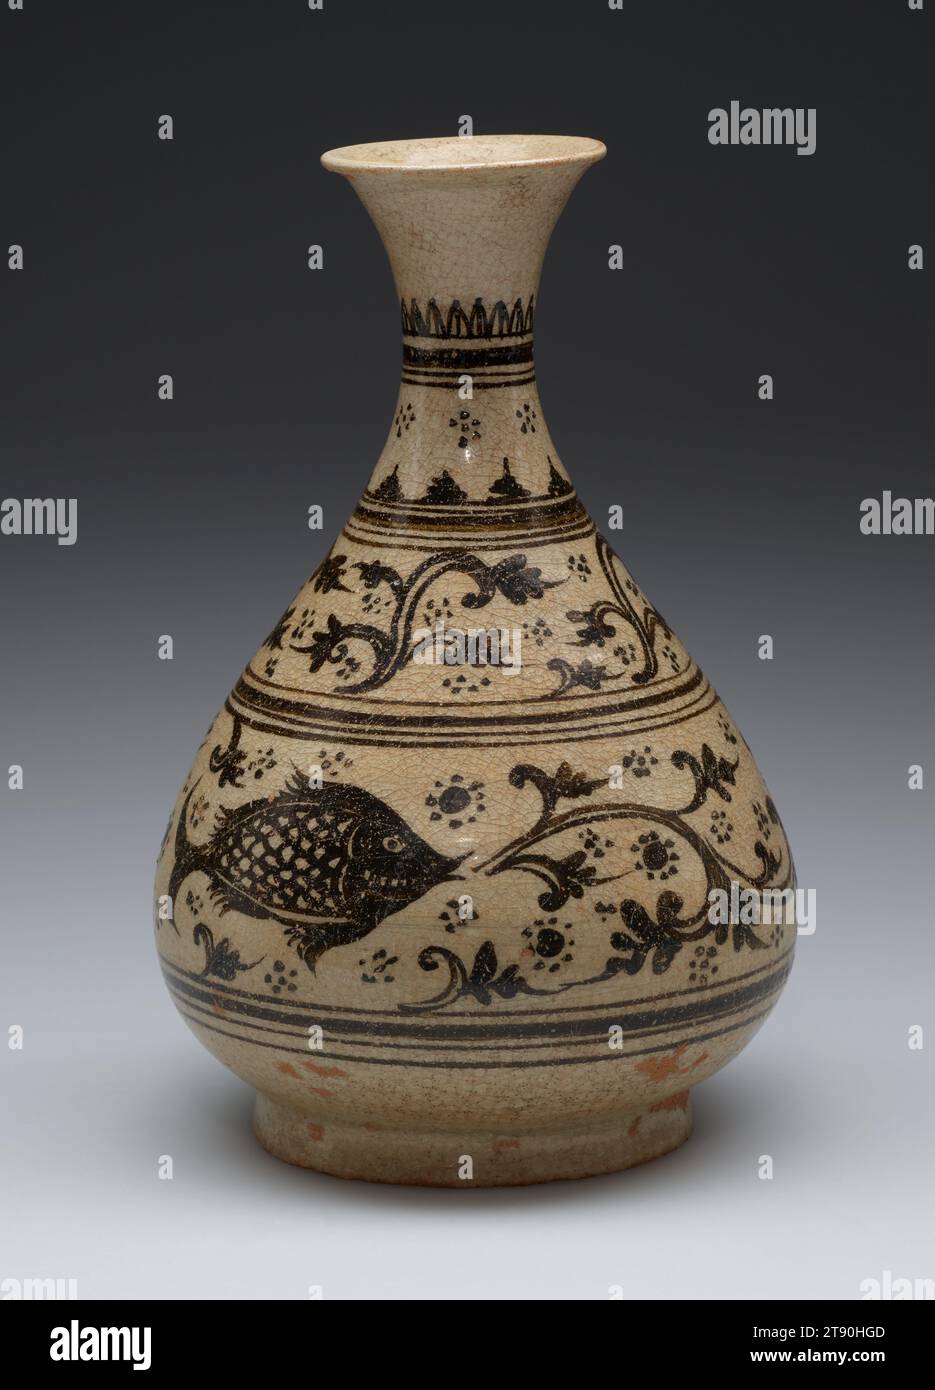 Vase mit Fisch, 14.-16. Jahrhundert, 7 5/8 x 4 7/8 x 4 7/8 cm (19,37 x 12,38 x 12,38 cm), glasierte Keramik, Thailand, 14.-16. Jahrhundert, 1933, Archäologen entdeckten etwa 200 Öfen in Kalong und ergaben Beweise für die Herstellung von hochbefeuerten Keramikwaren für den heimischen Verbrauch während der Höhe des Lan Na Kingdom (1300er–1500er Jahre). Kalong Potter nutzten einen Ton, der einen hohen Anteil an Kaolin enthielt, um elegante Keramiken zu schaffen, die sich durch einen kreidigen, glatten Körper und eine schwache Glasur in der Farbe einer grauen Regenwolke auszeichneten. Stockfoto